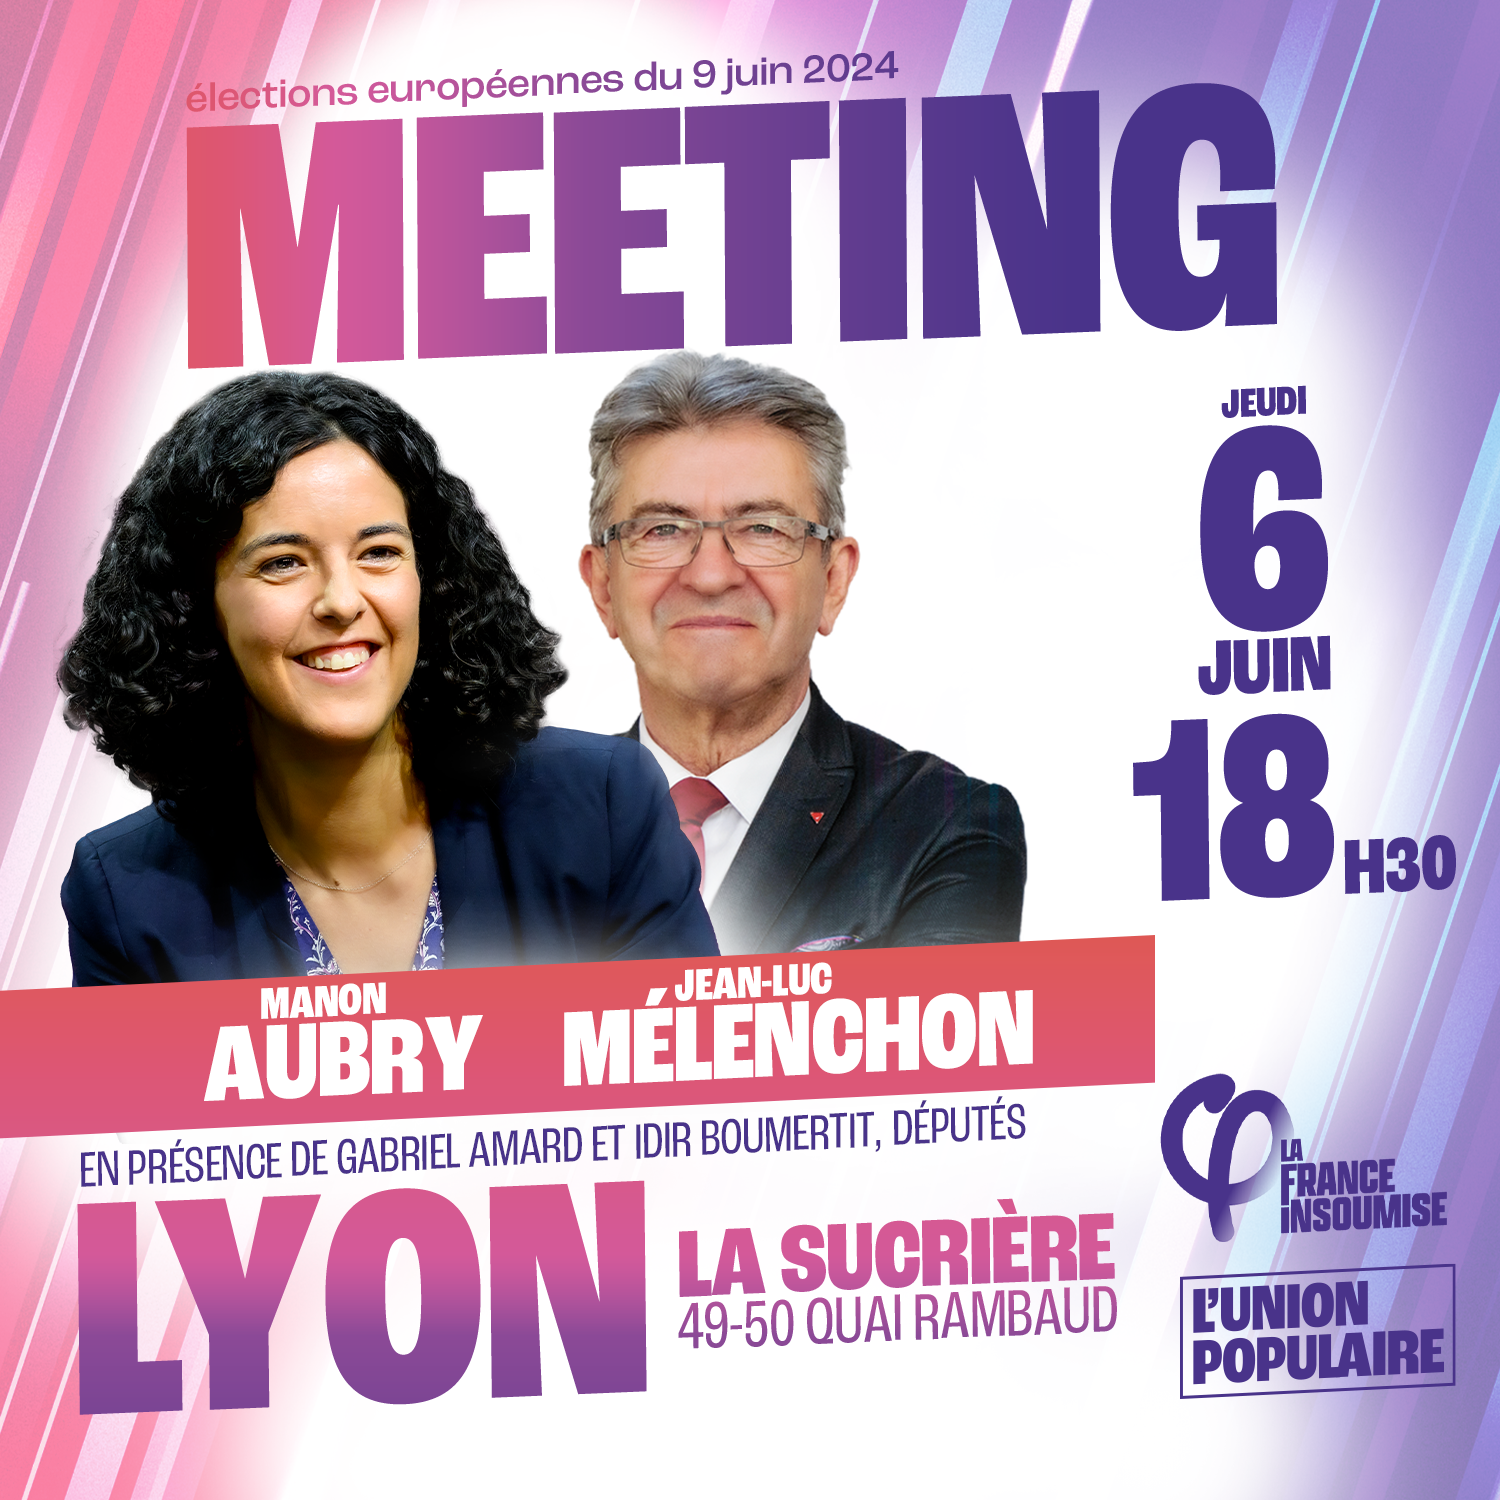 Meeting de Lyon avec Jean-Luc Mélenchon et Manon Aubry le 6 juin à 18h30 à la Sucrière